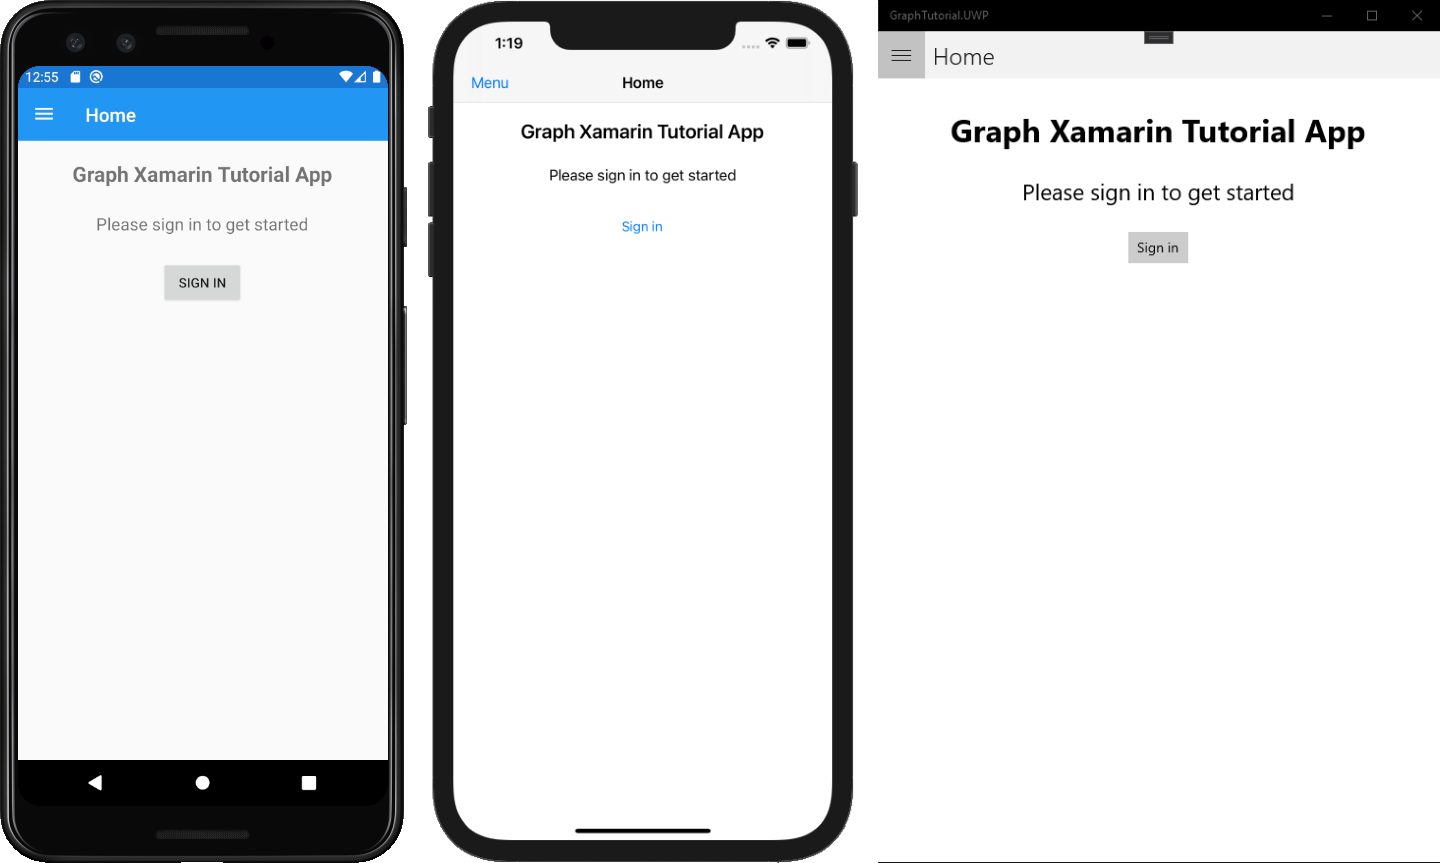 Capturas de tela das versões Android, iOS e UWP do aplicativo